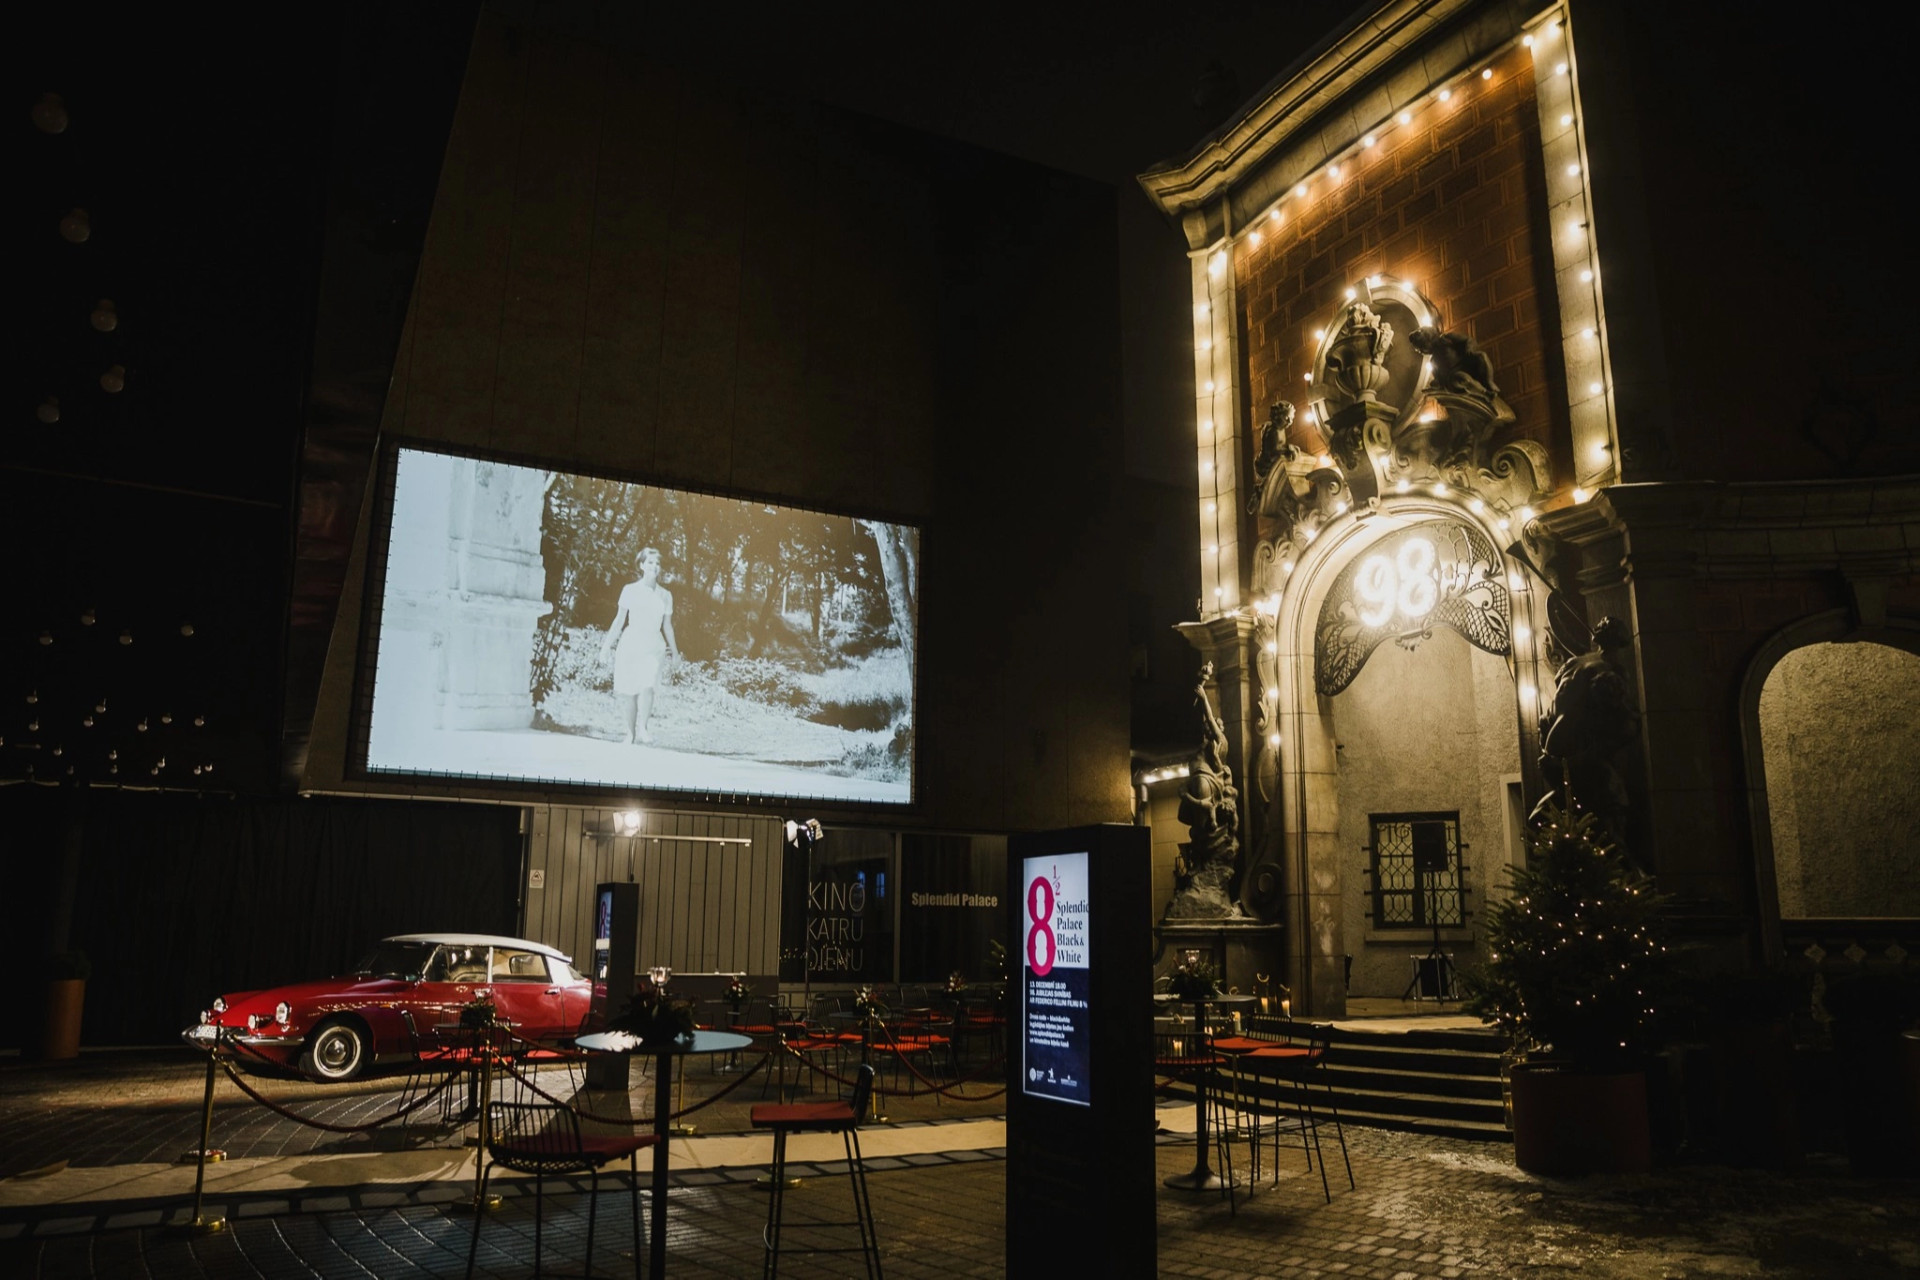 Kinoteātris "Splendid Palace" | Rīga | Pasākumu vieta - galerijas bilde